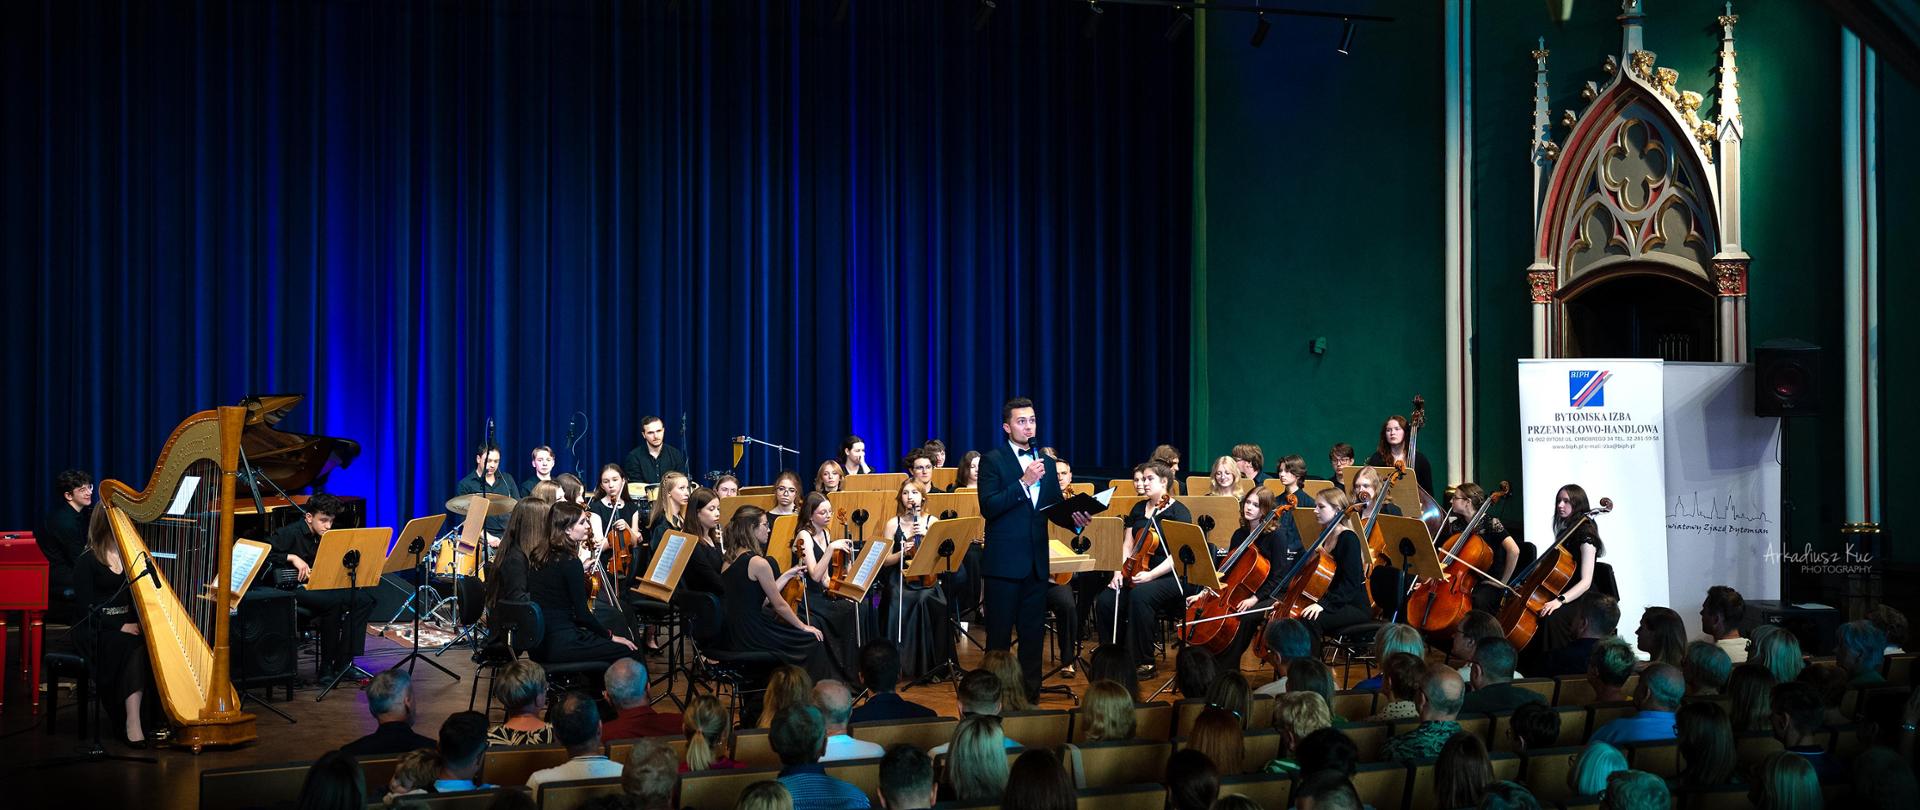 Koncert w sali koncertowej szkoły muzycznej w Bytomiu. Na scenie Polska Młodzieżowa Orkiestra Symfoniczna oraz prowadzący Marcin Gad.